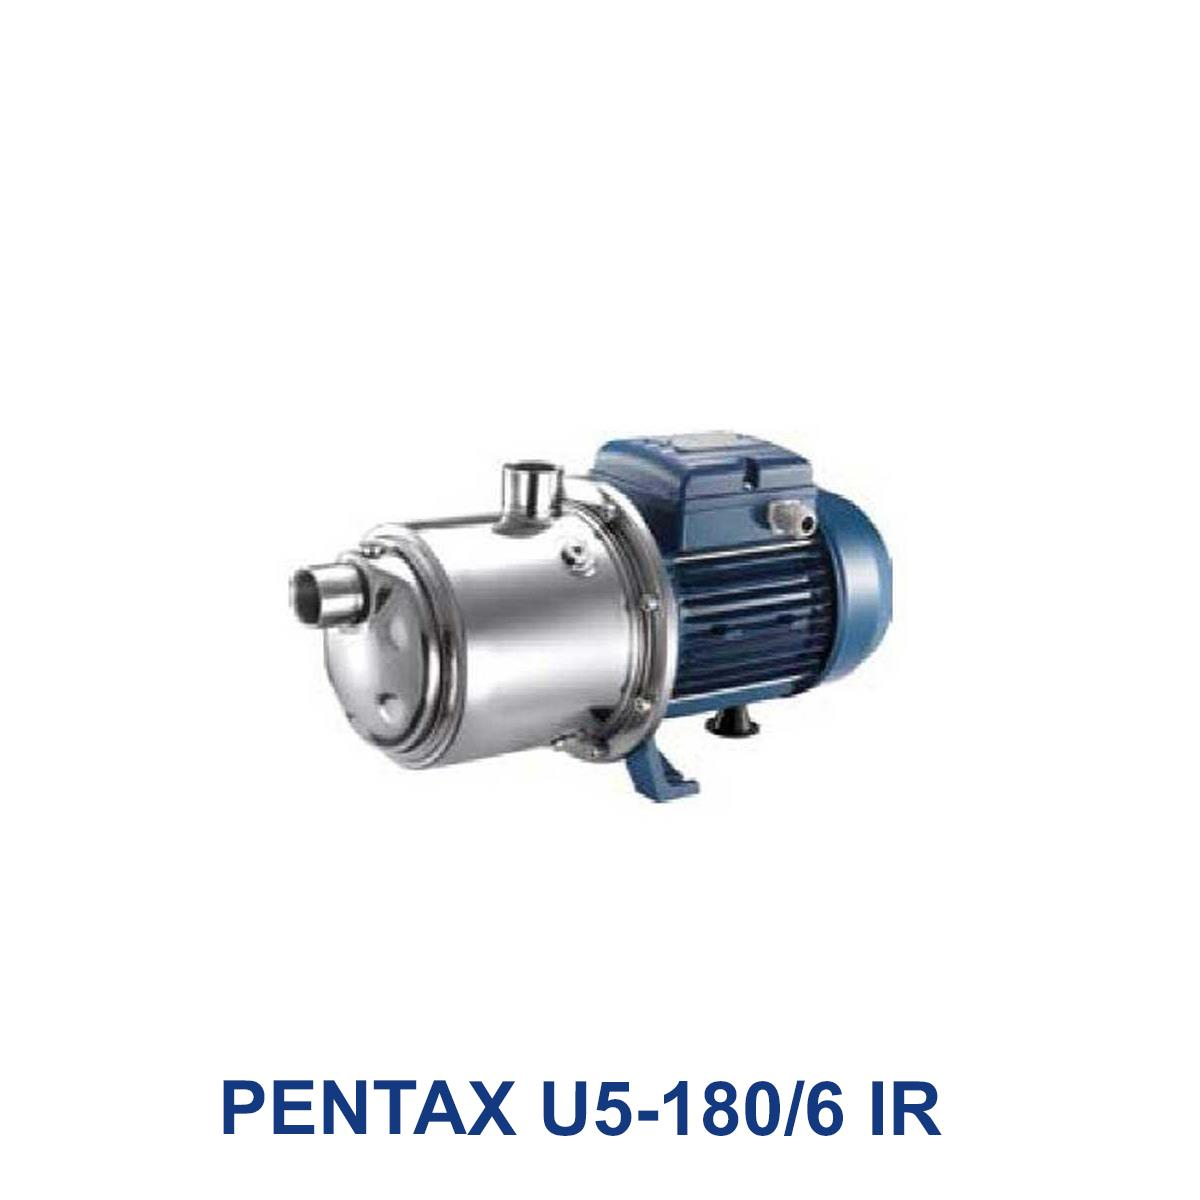 PENTAX-U5-180-6-IR